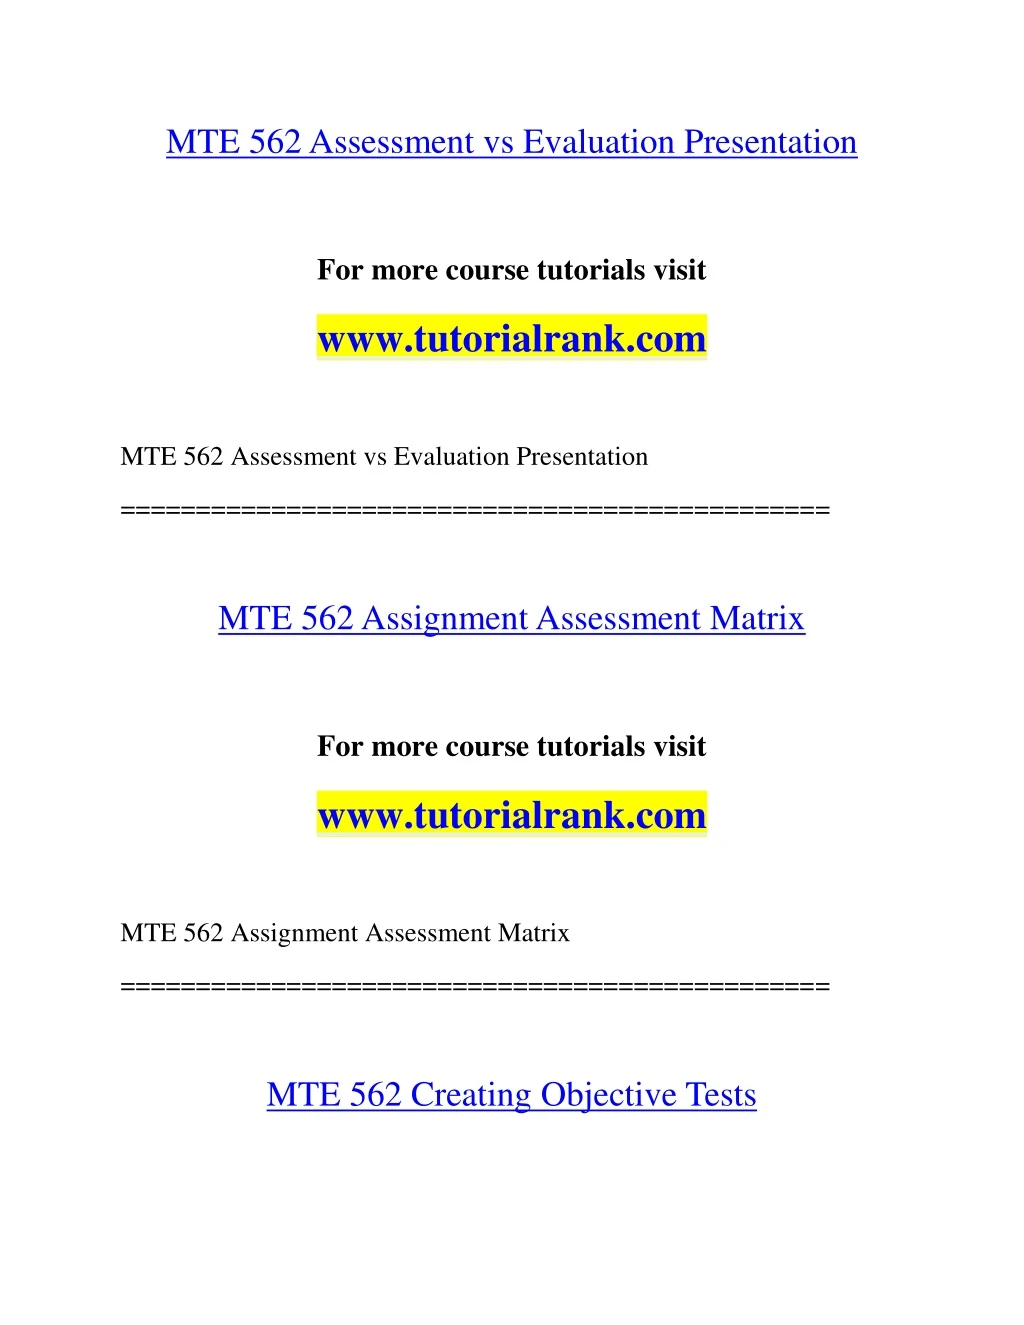 mte 562 assessment vs evaluation presentation